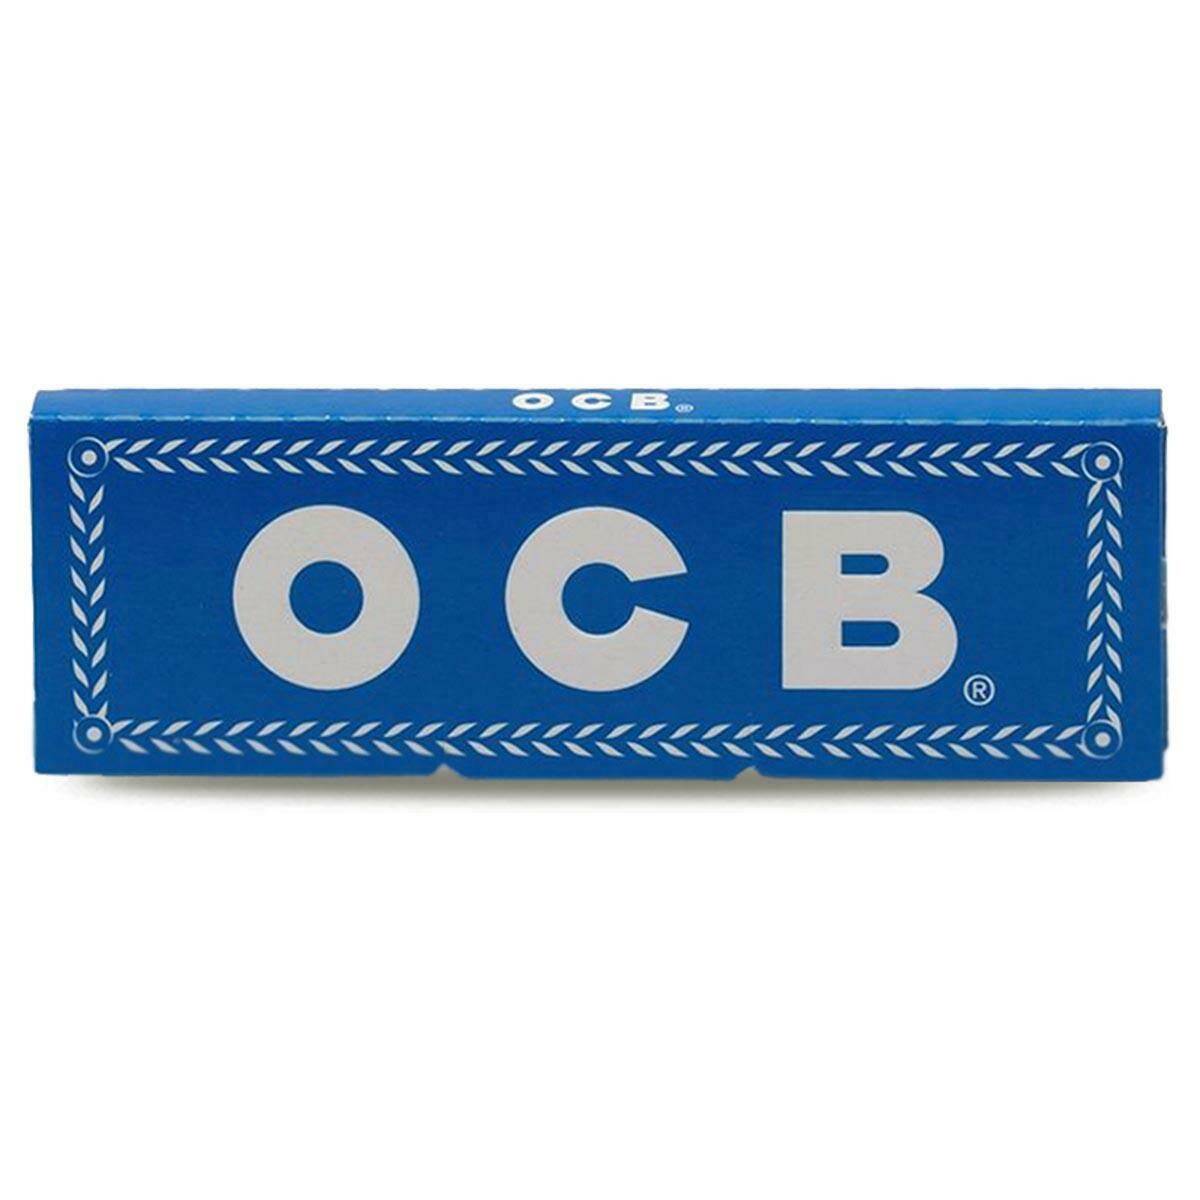 OCB Blue